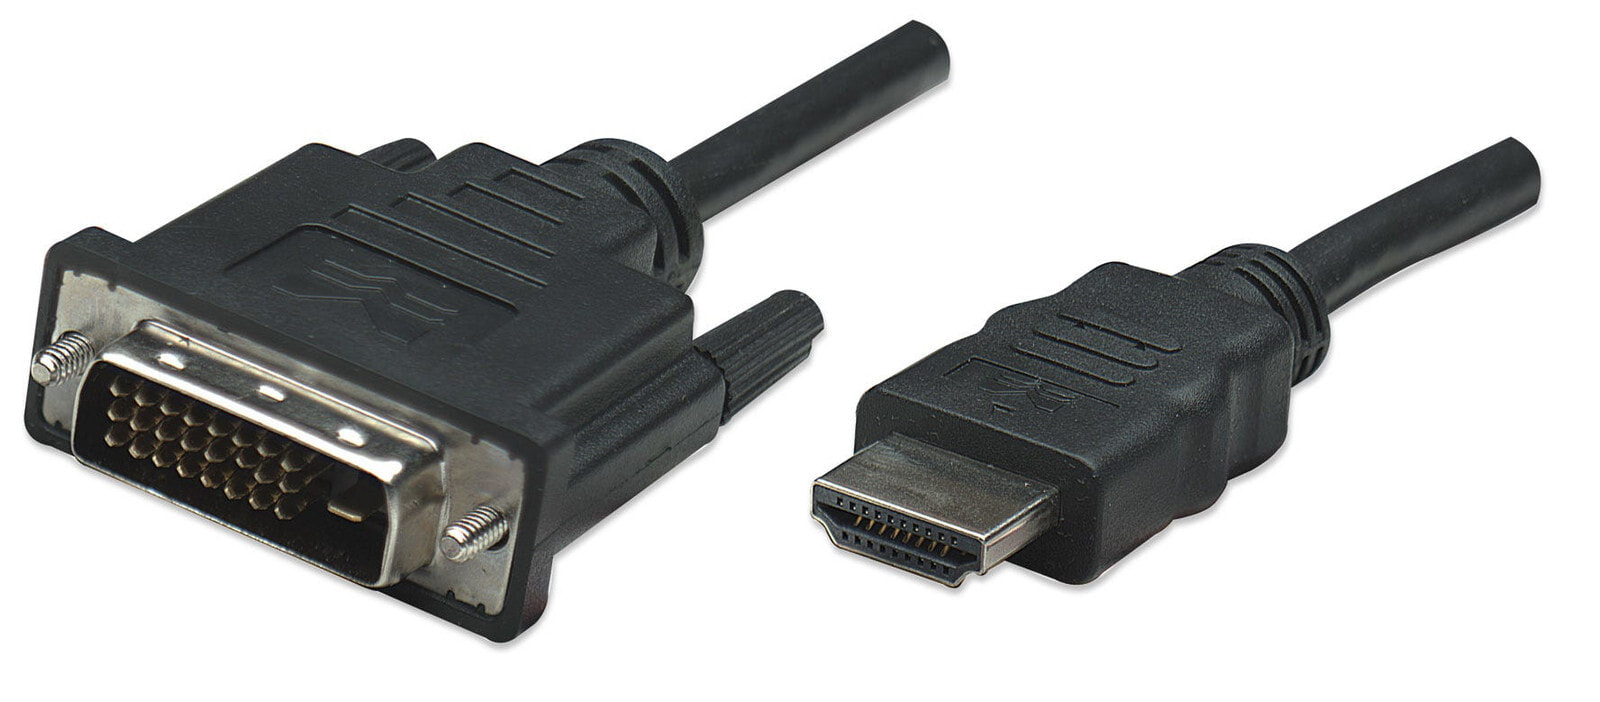 Manhattan 322782 видео кабель адаптер 1 m HDMI DVI-D Черный